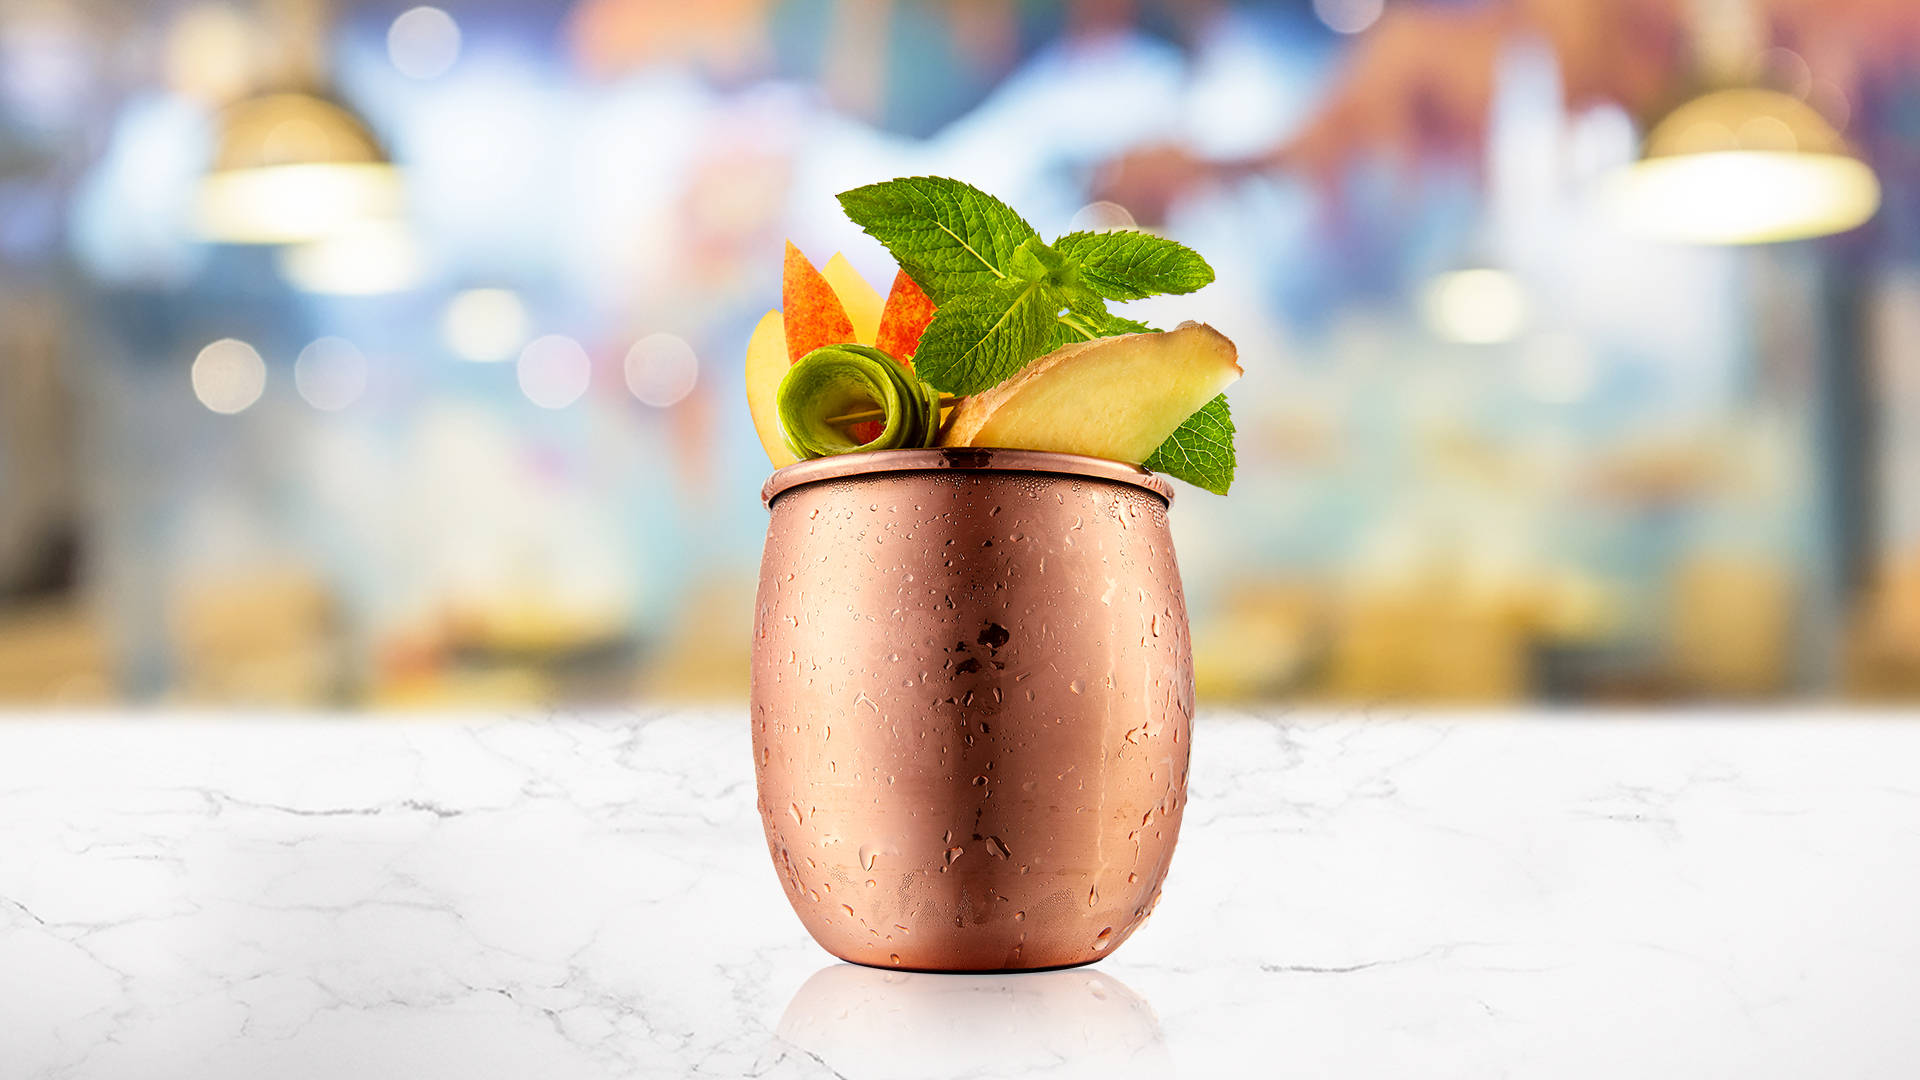 Green Tea & Apple Mule in a copper mug